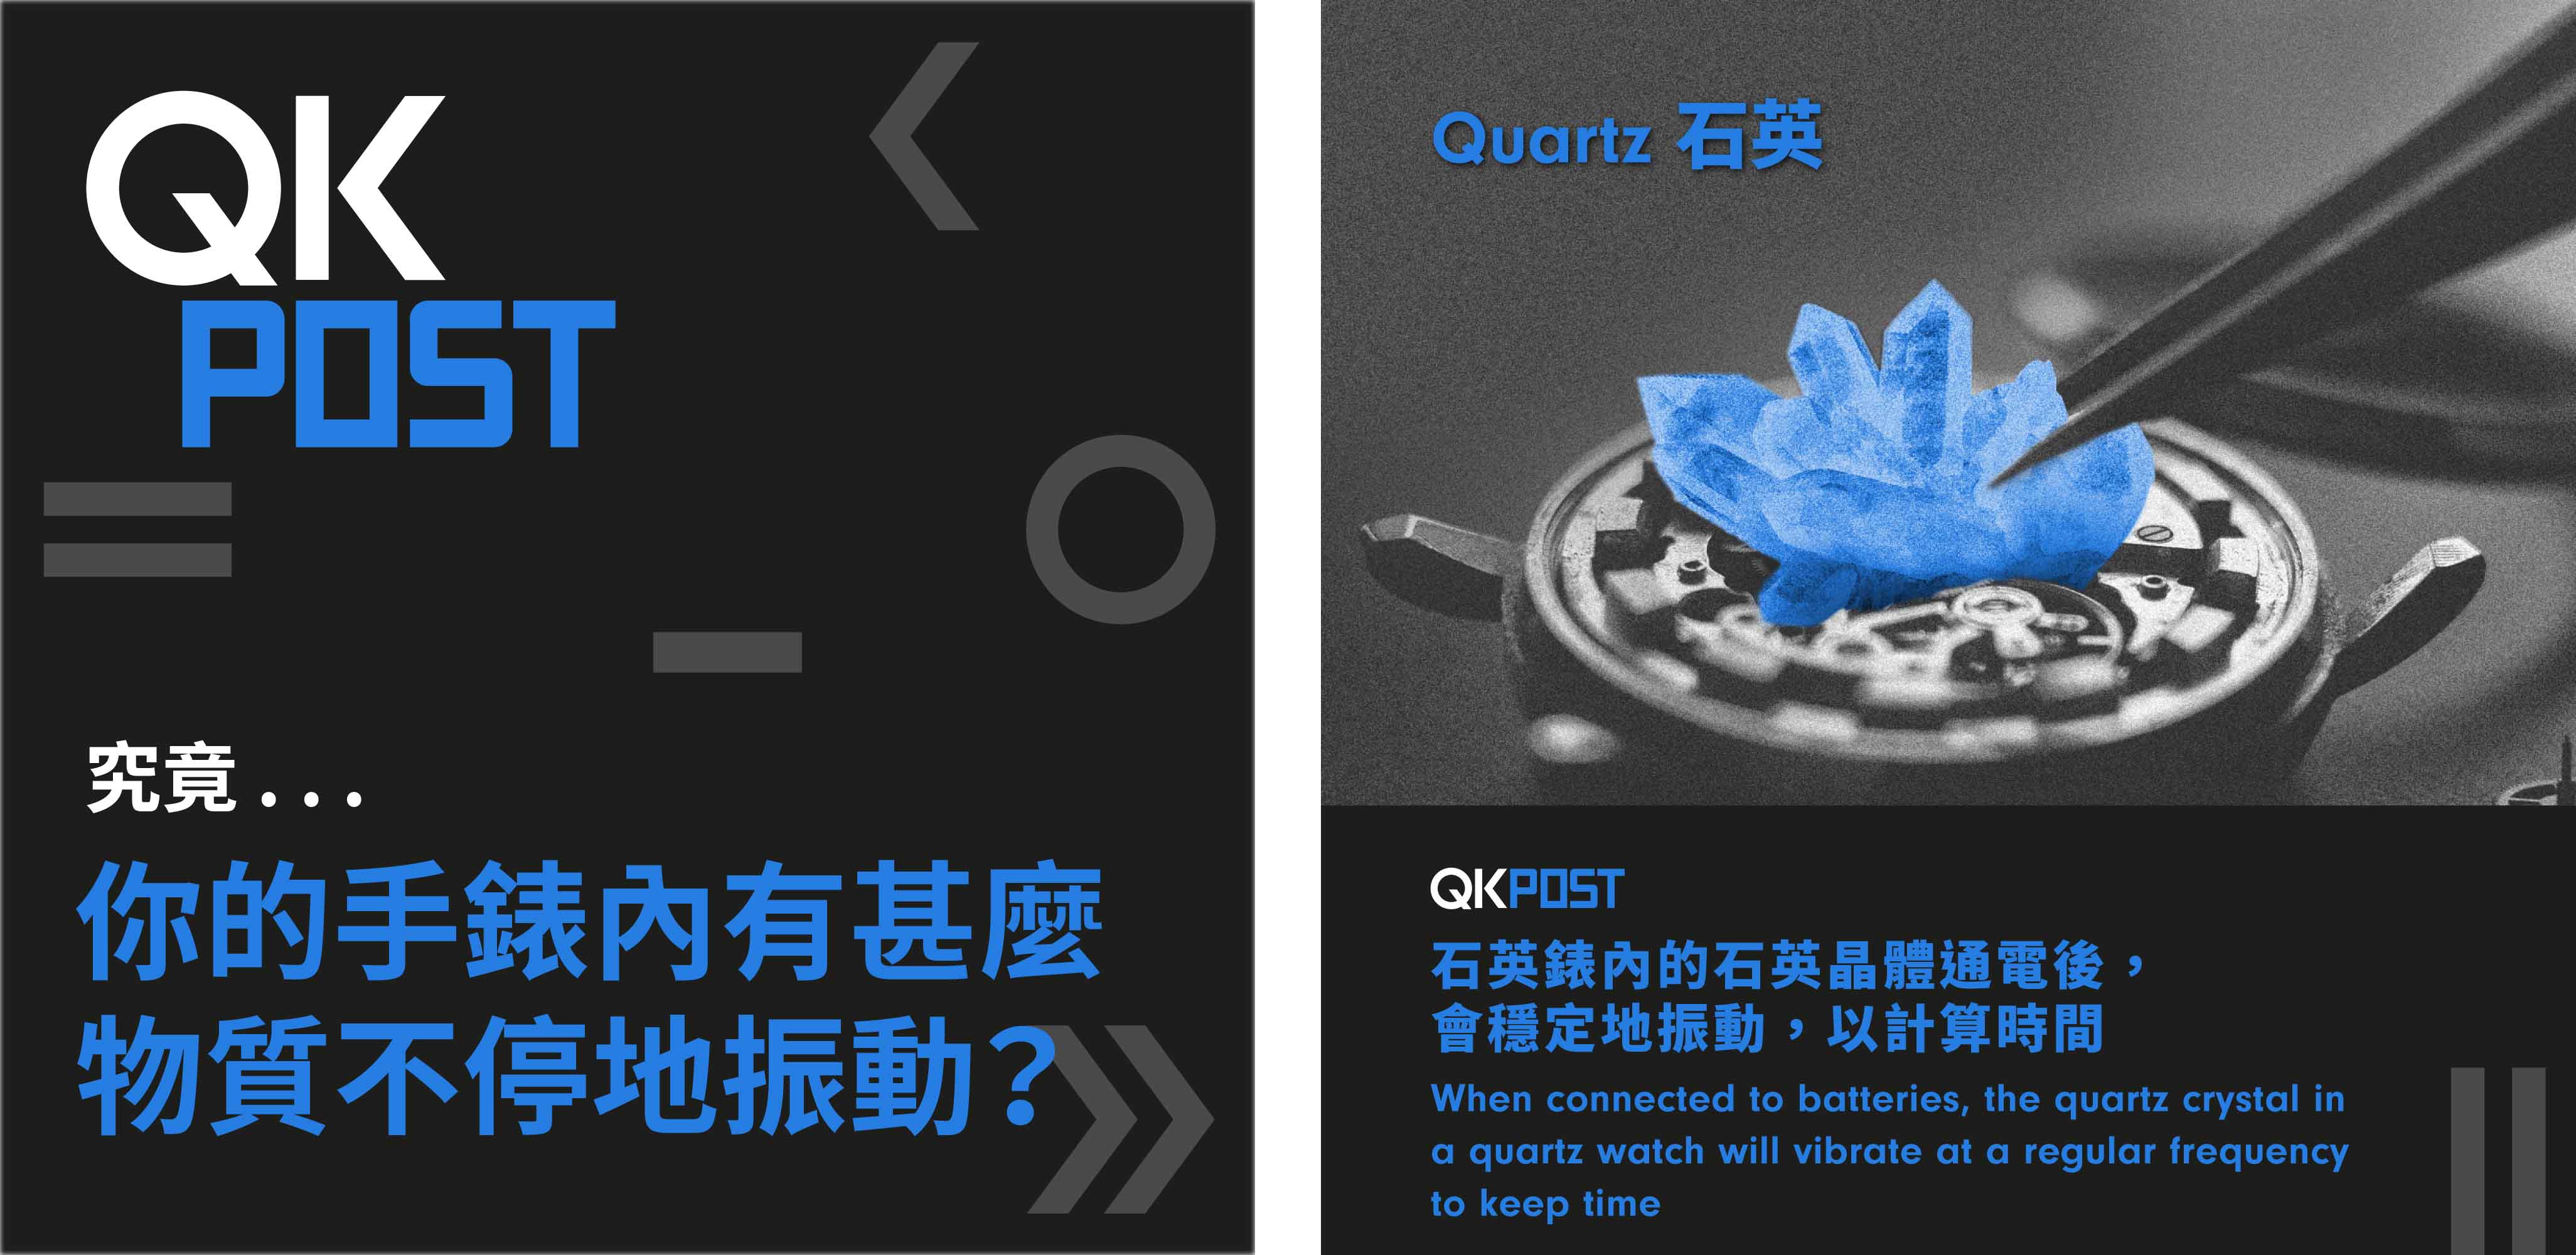 QKPOST: Science Vocabulary A to Z - Q for Quartz